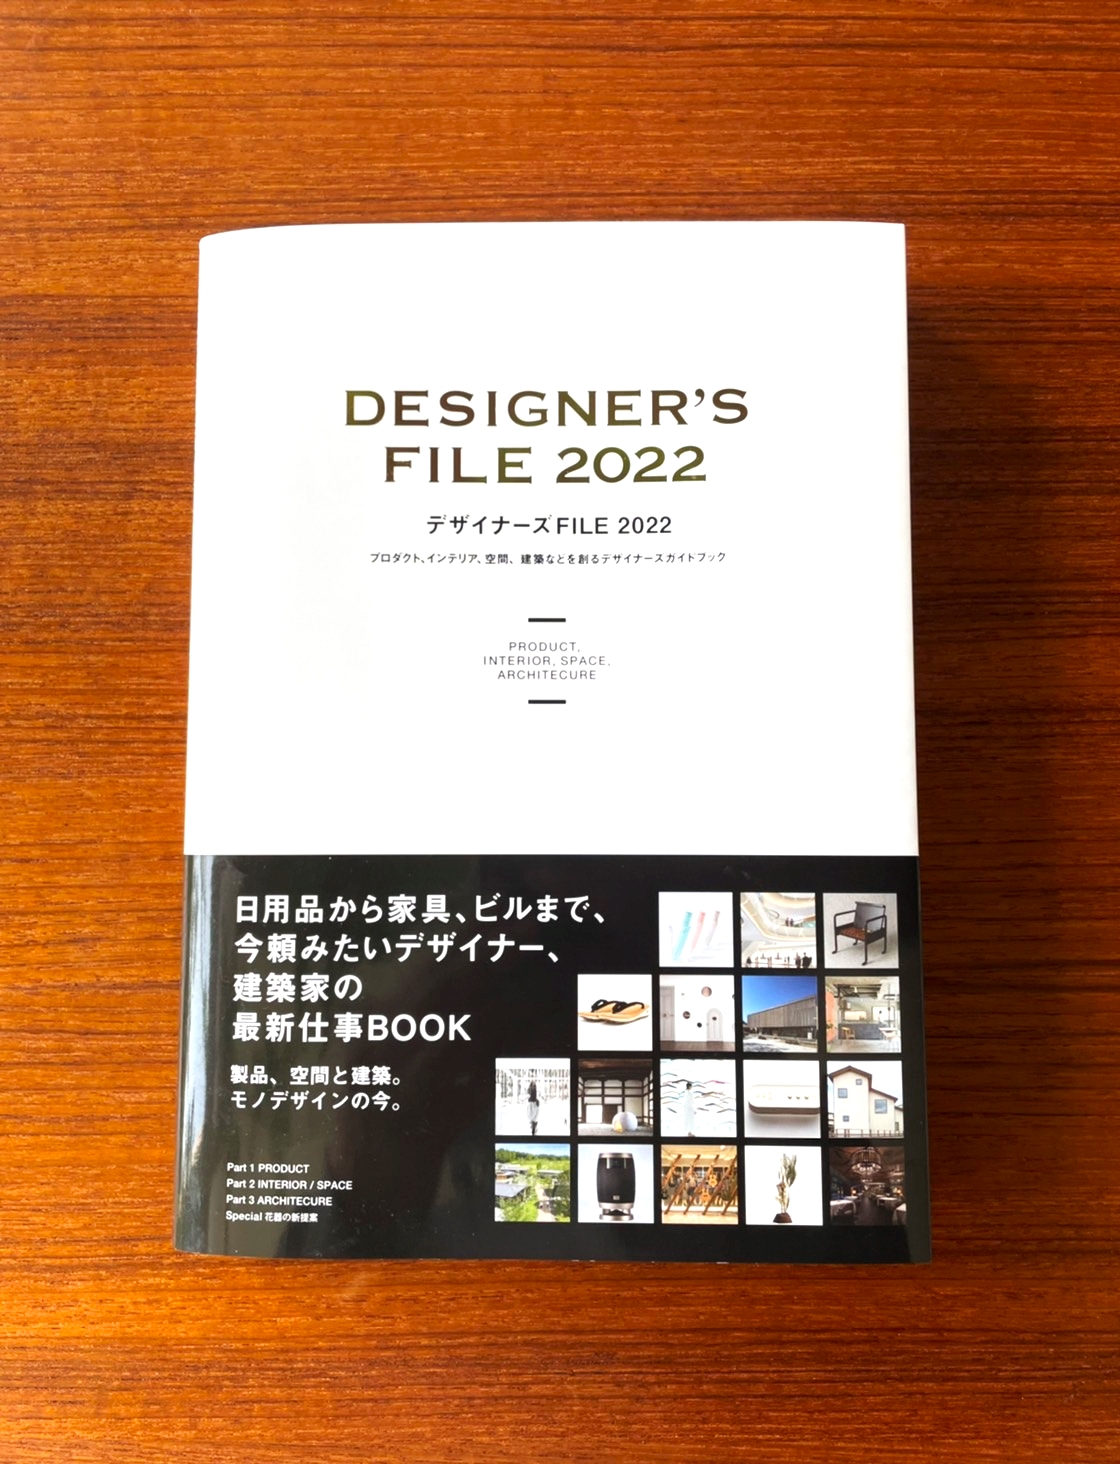 デザイン専門誌『デザイナーズFILE2022』に掲載されました。